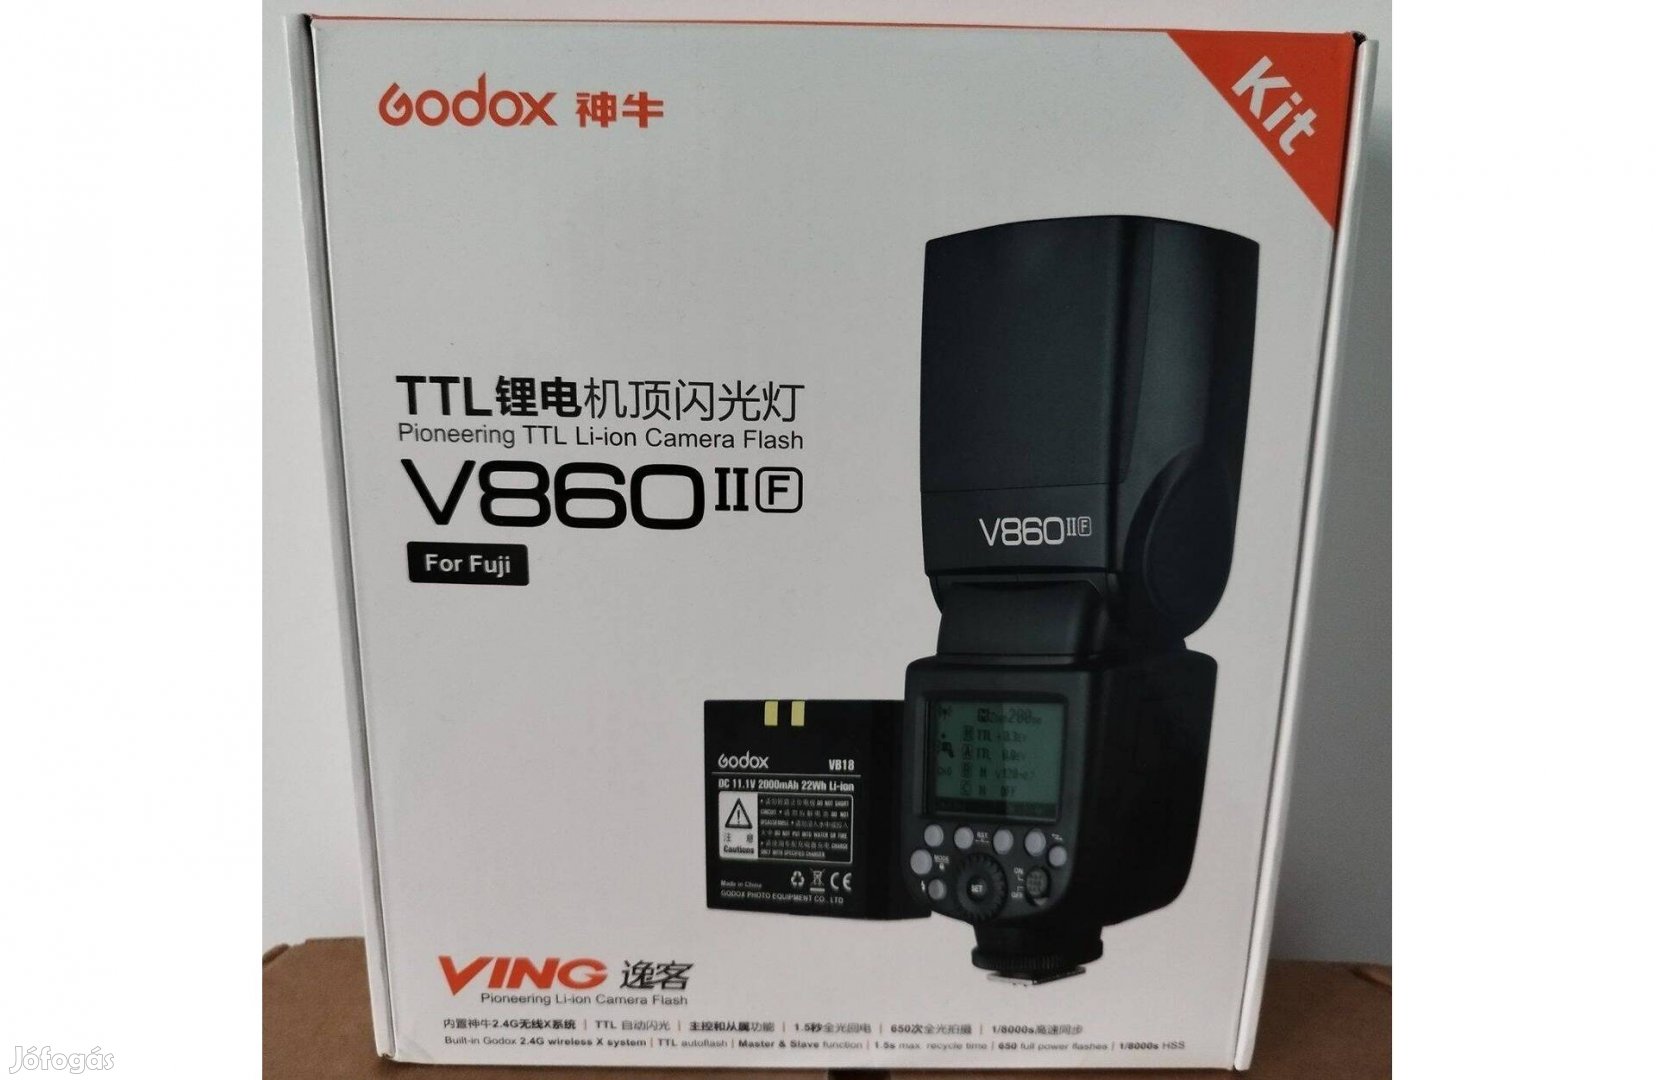 Új! Godox V860 II rendszervaku Fuji V 860II V860II V 860 II